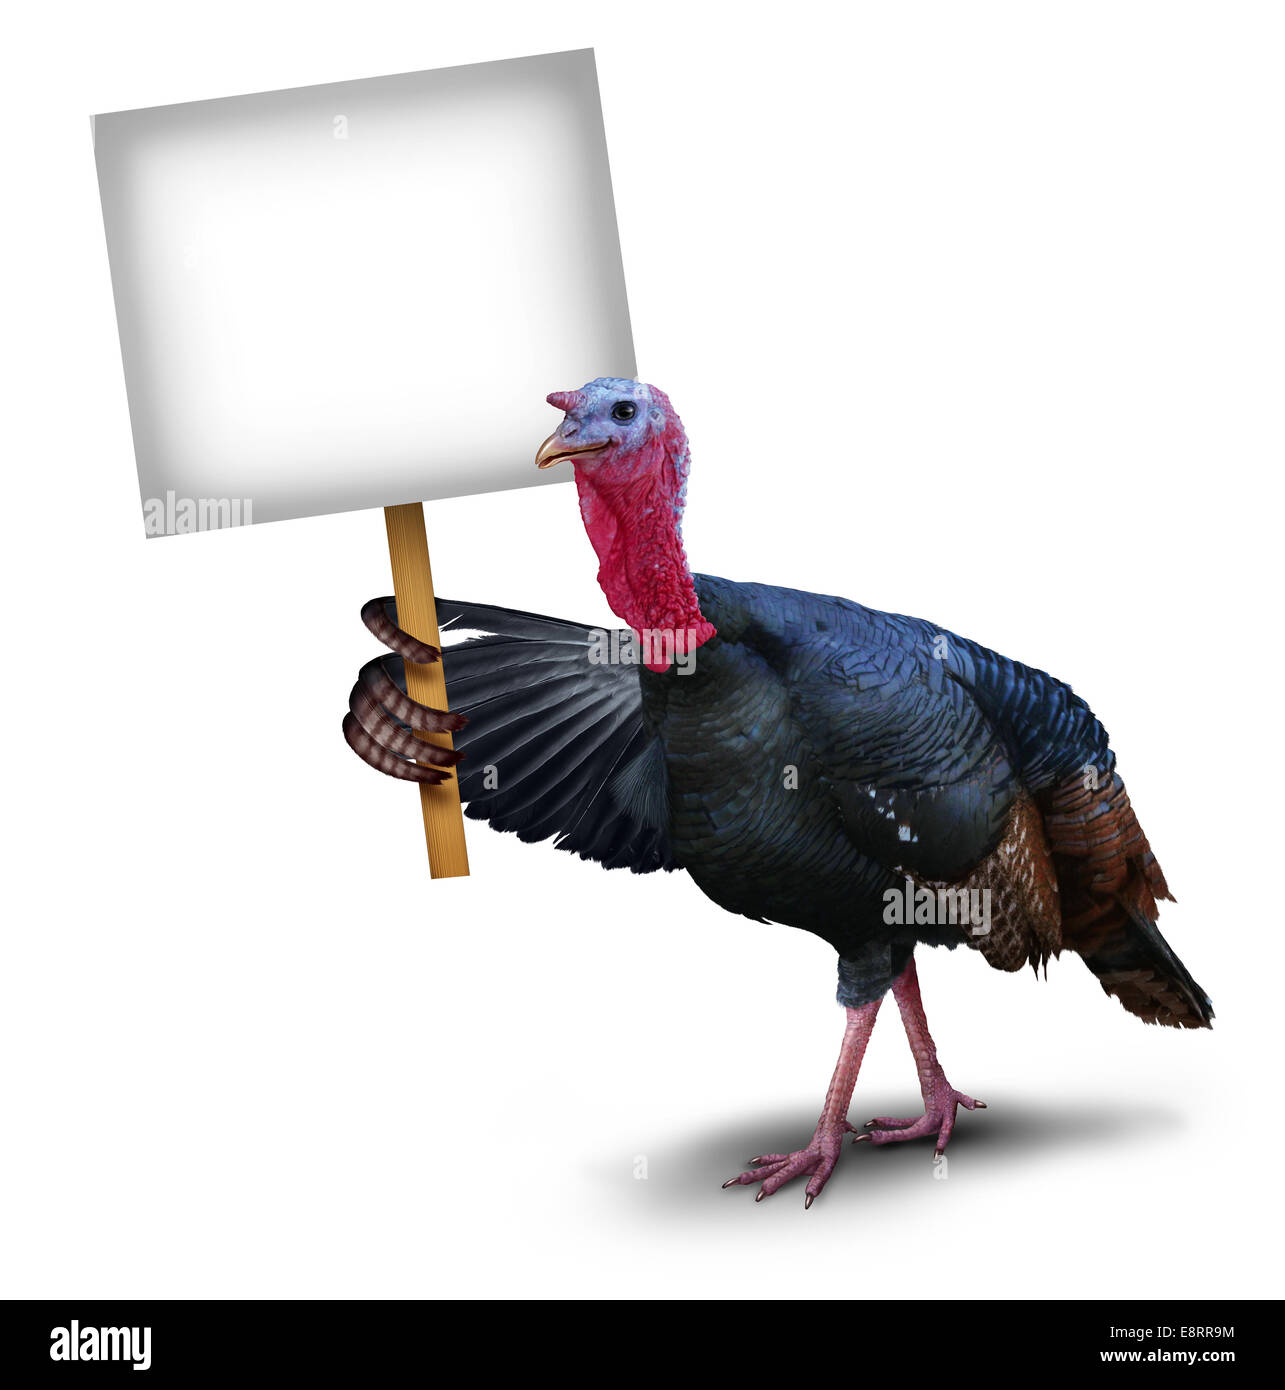 Türkei Vogel Zeichen Konzept als Danksagung Charakter Symbol oben mit seinen Flügel mit einem Schild Plakat auf einem weißen Hintergrund, Herbst fest Ans saisonale Tierwelt-Thema darstellt. Stockfoto